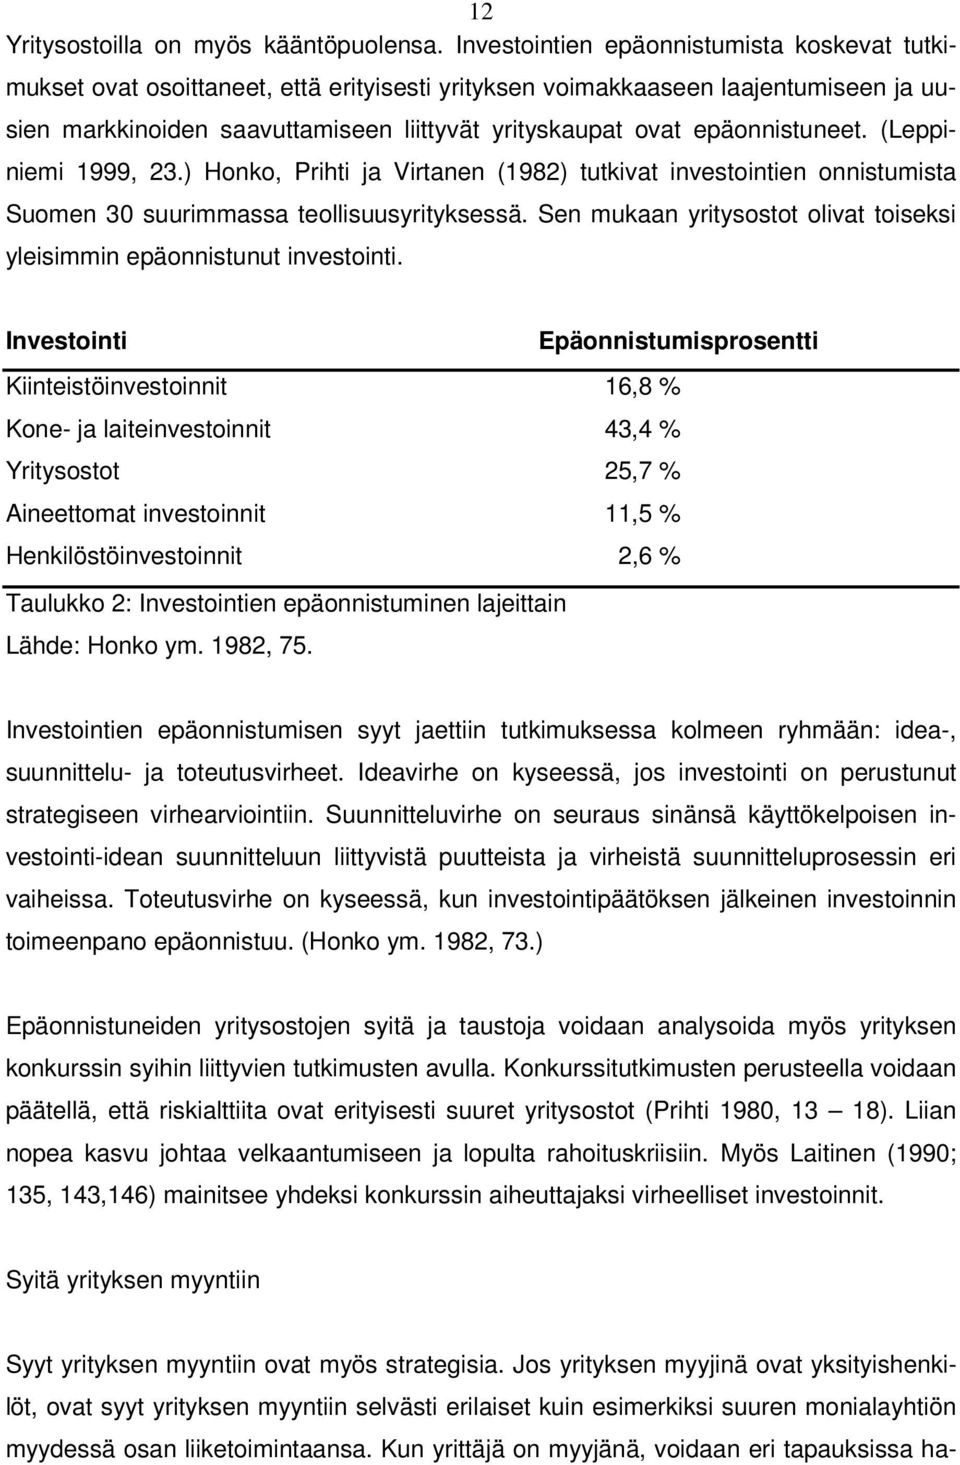 epäonnistuneet. (Leppiniemi 1999, 23.) Honko, Prihti ja Virtanen (1982) tutkivat investointien onnistumista Suomen 30 suurimmassa teollisuusyrityksessä.